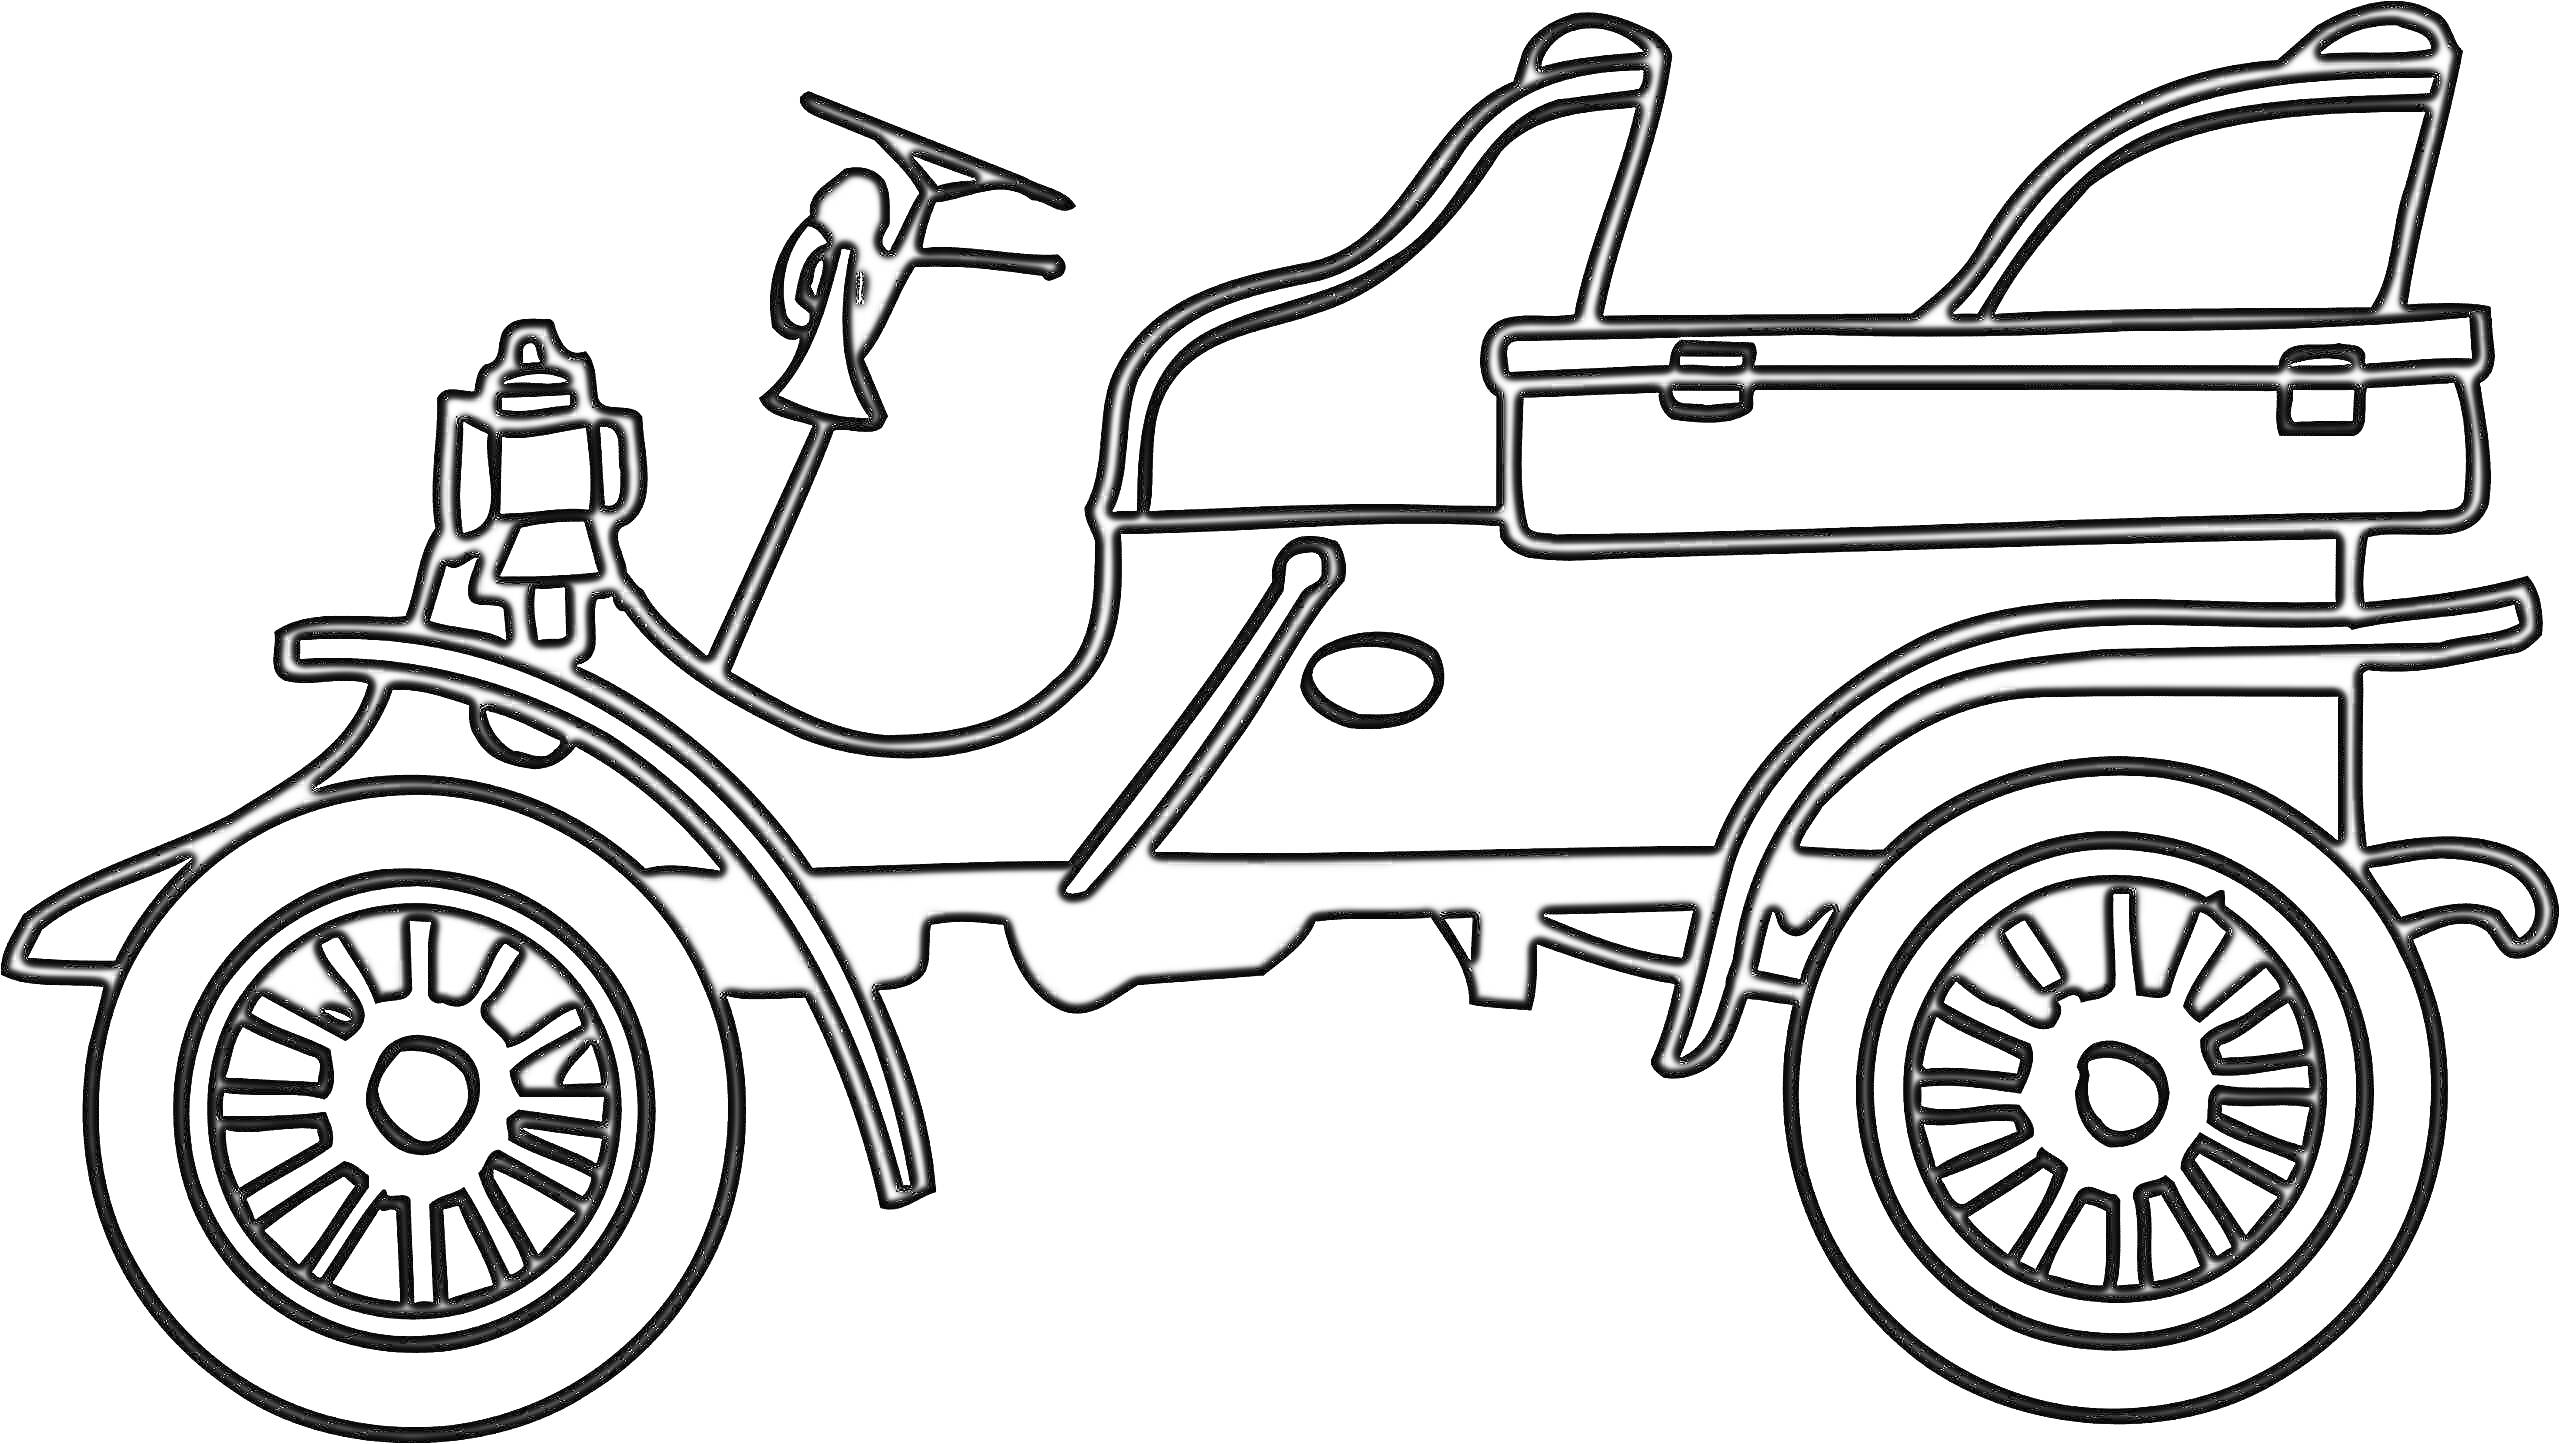 Ретро-автомобиль с открытым верхом, два сиденья, сплошные колеса со спицами, вытянутый корпус